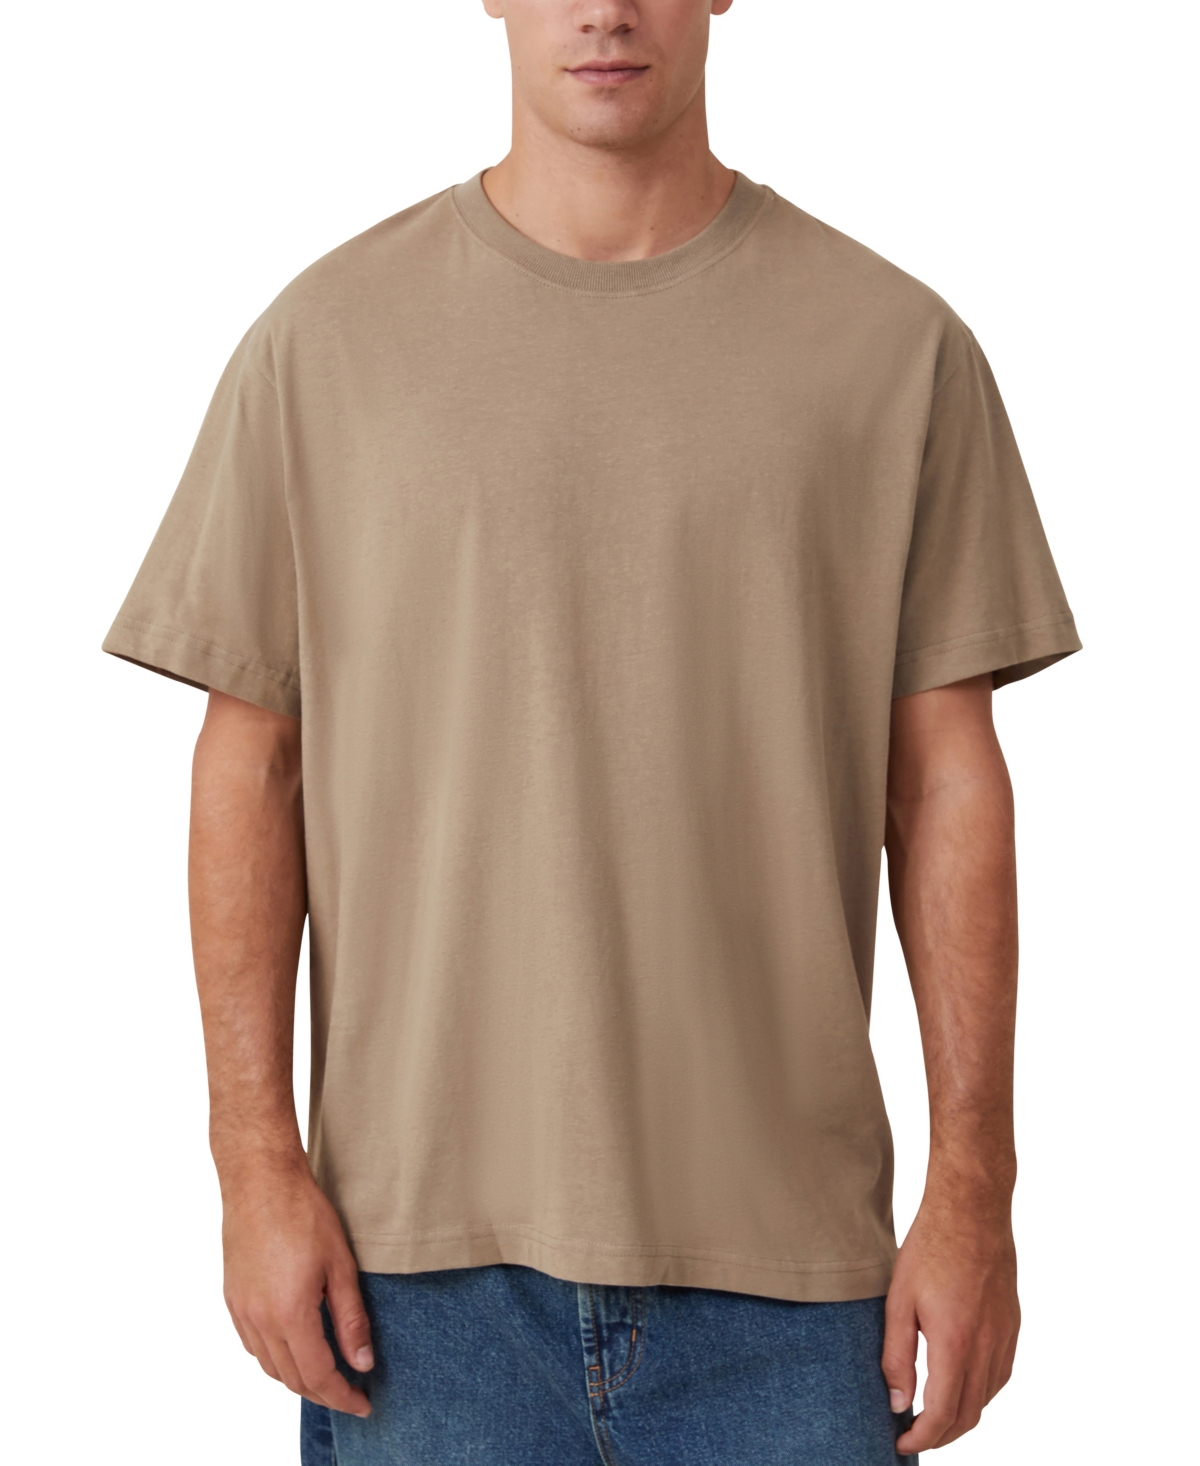 Men's Loose Fit T-Shirt - Beige